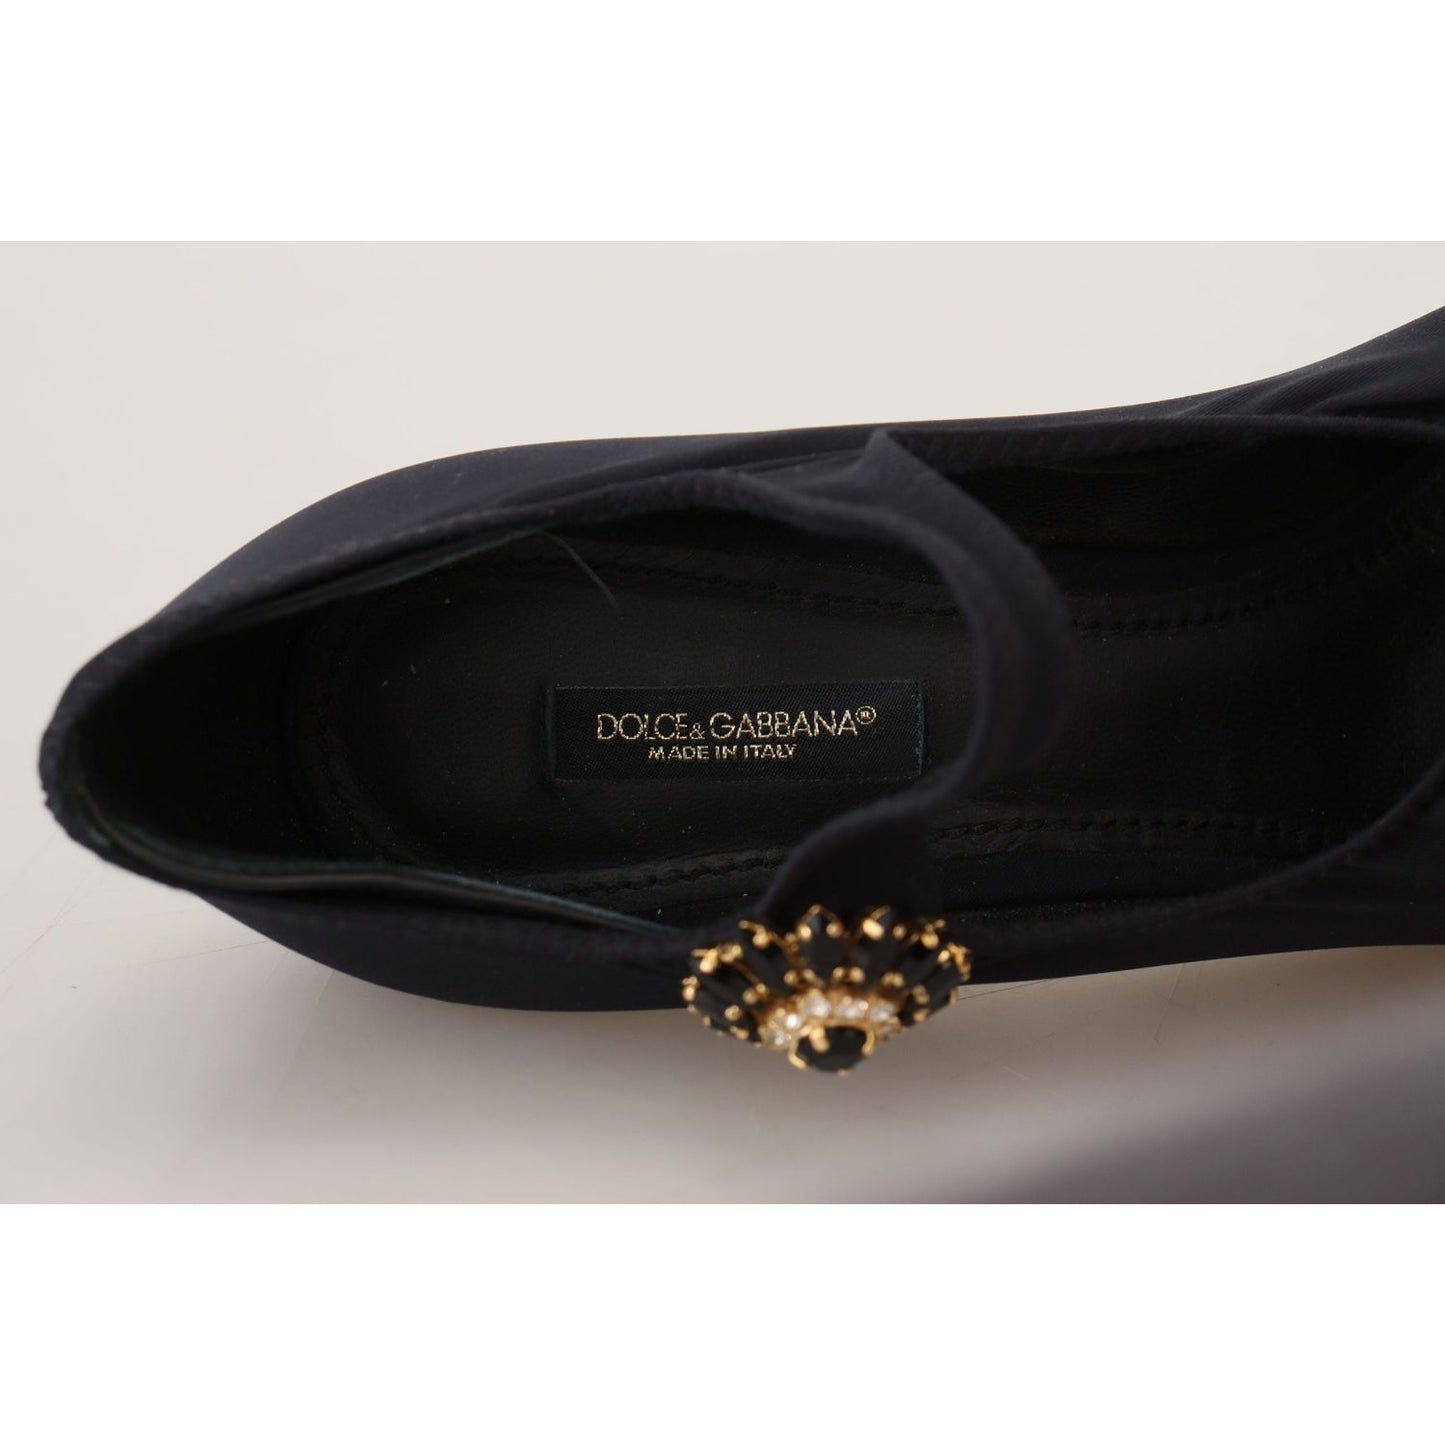 Dolce & GabbanaChic Black Mary Jane Sock Pumps with CrystalsMcRichard Designer Brands£499.00